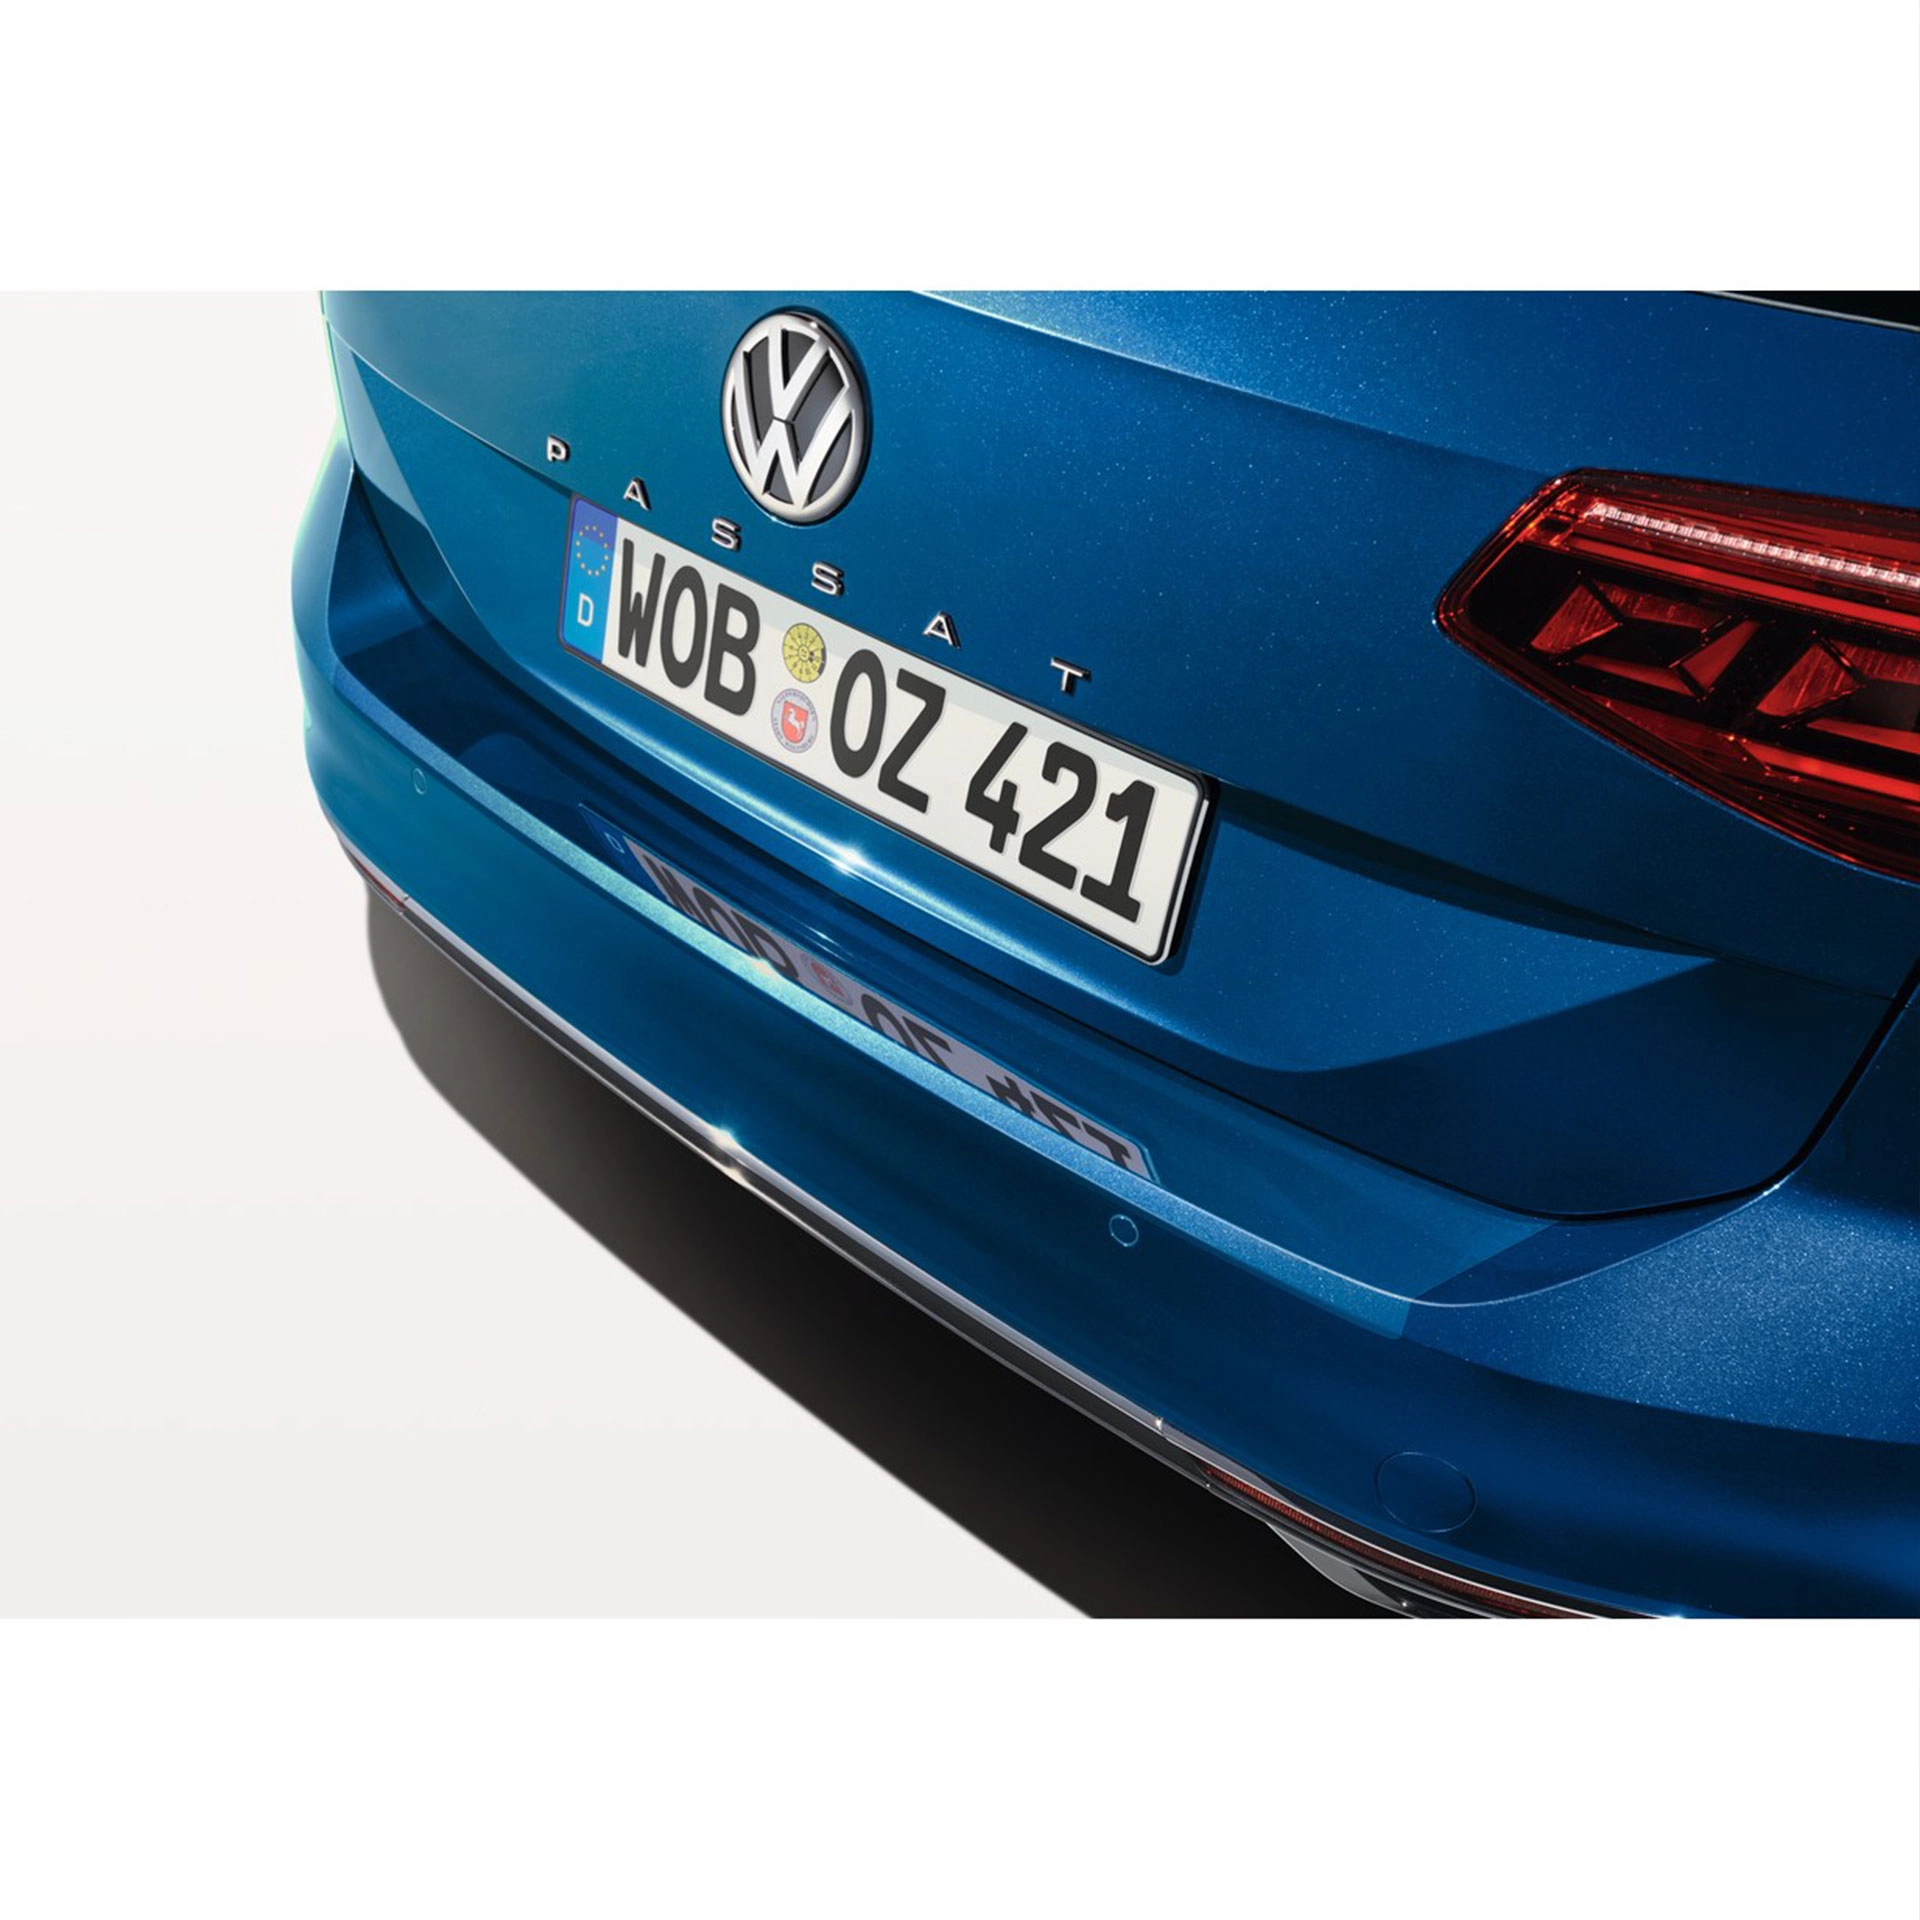  LADEKANTENSCHUTZ VW Passat Variant B8 Facelift